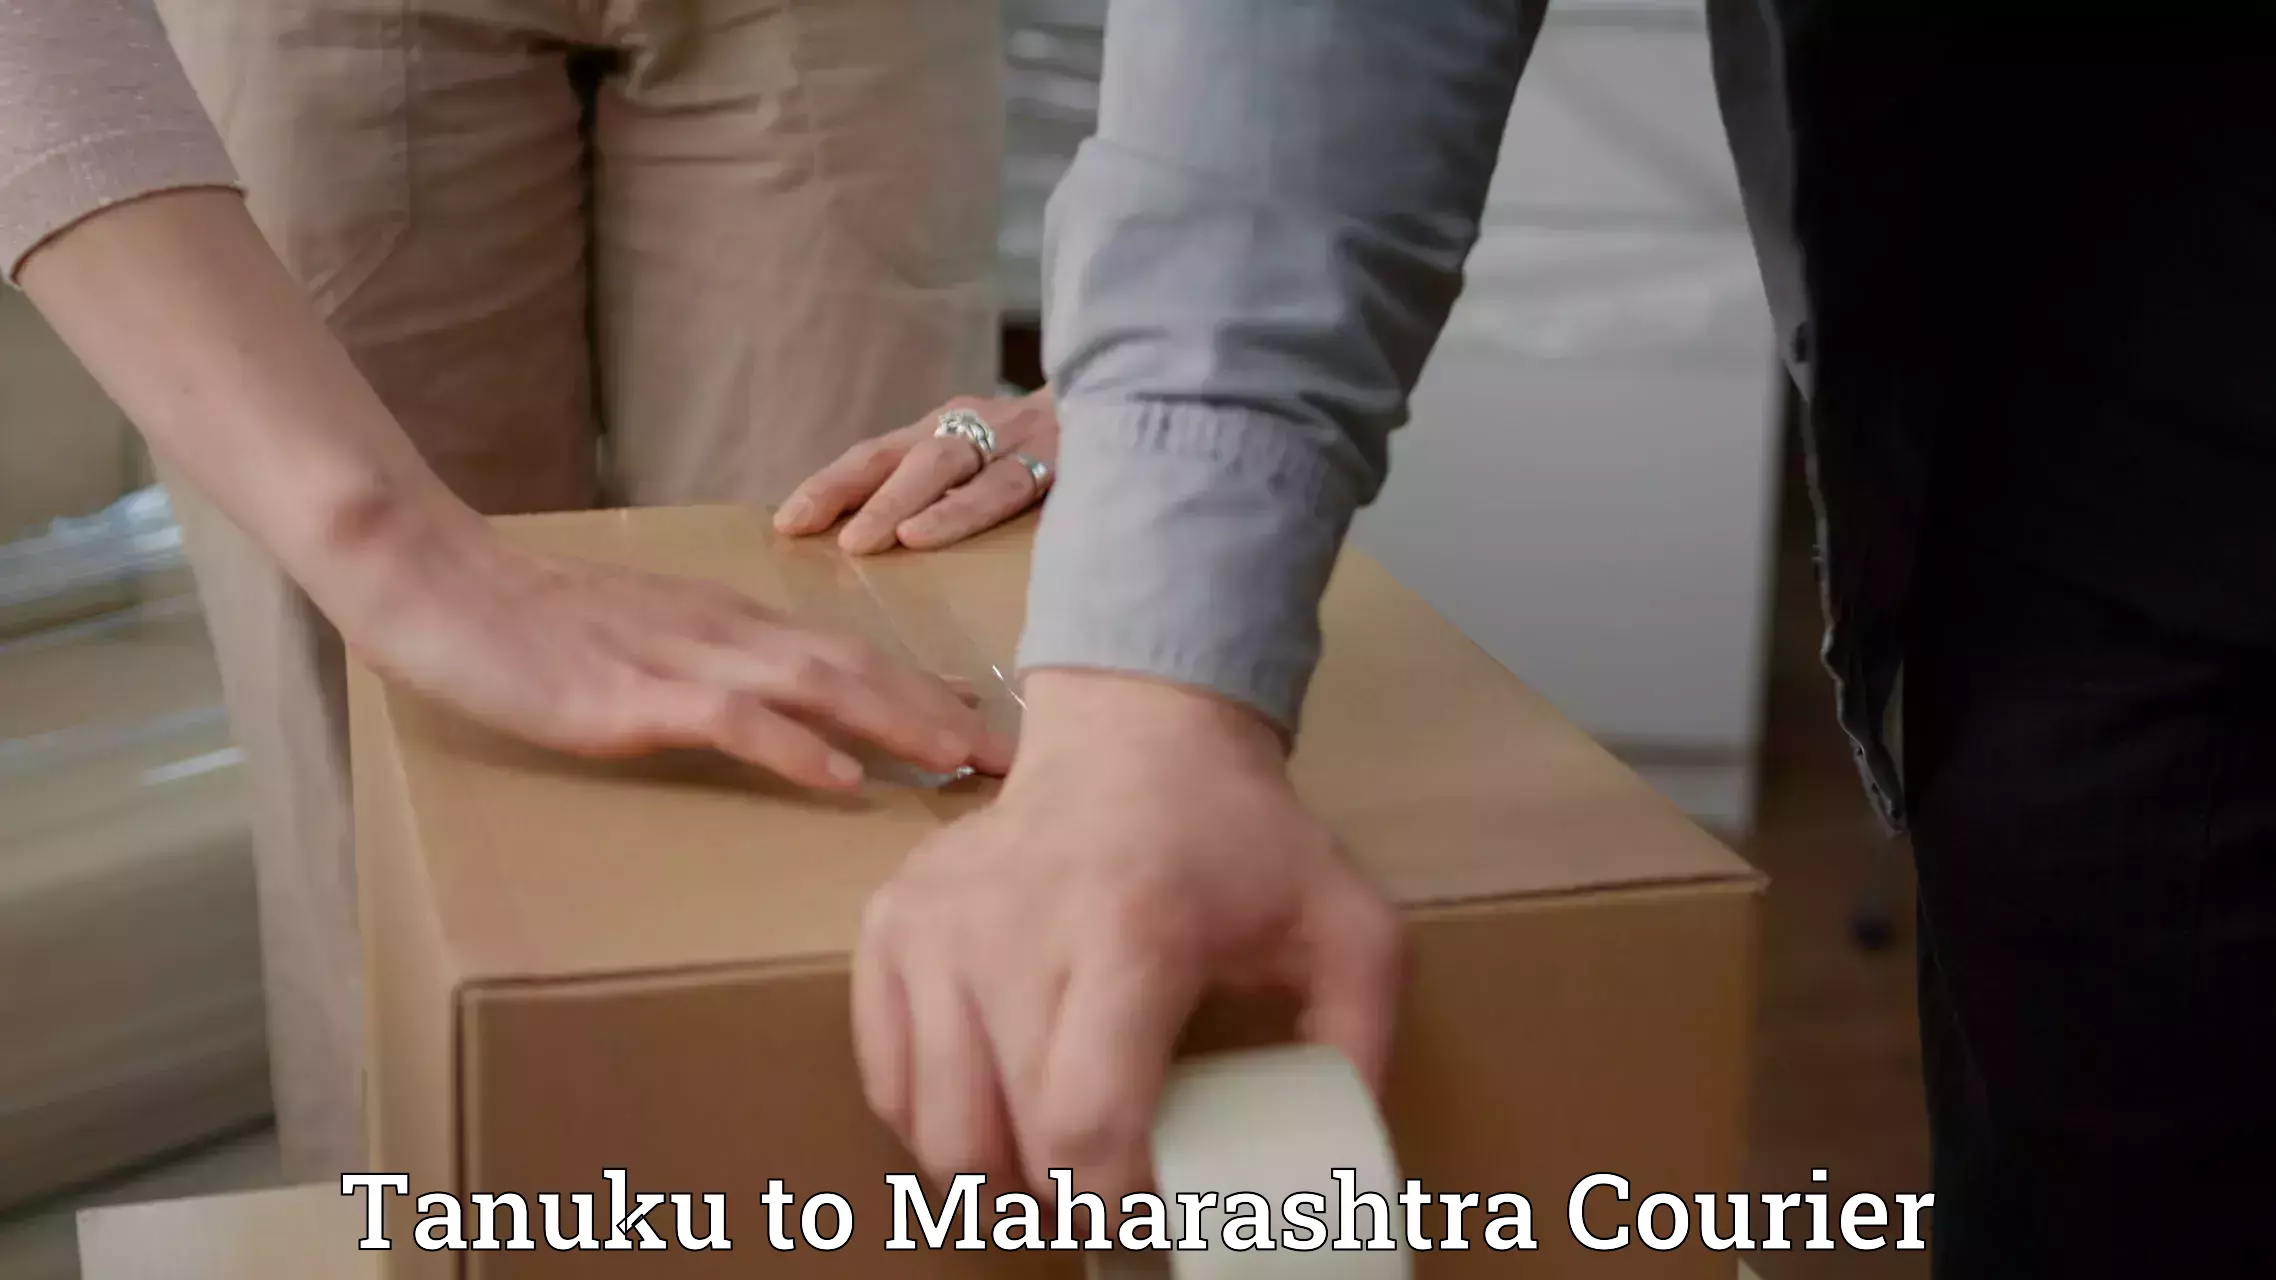 Baggage shipping experience in Tanuku to Maharashtra